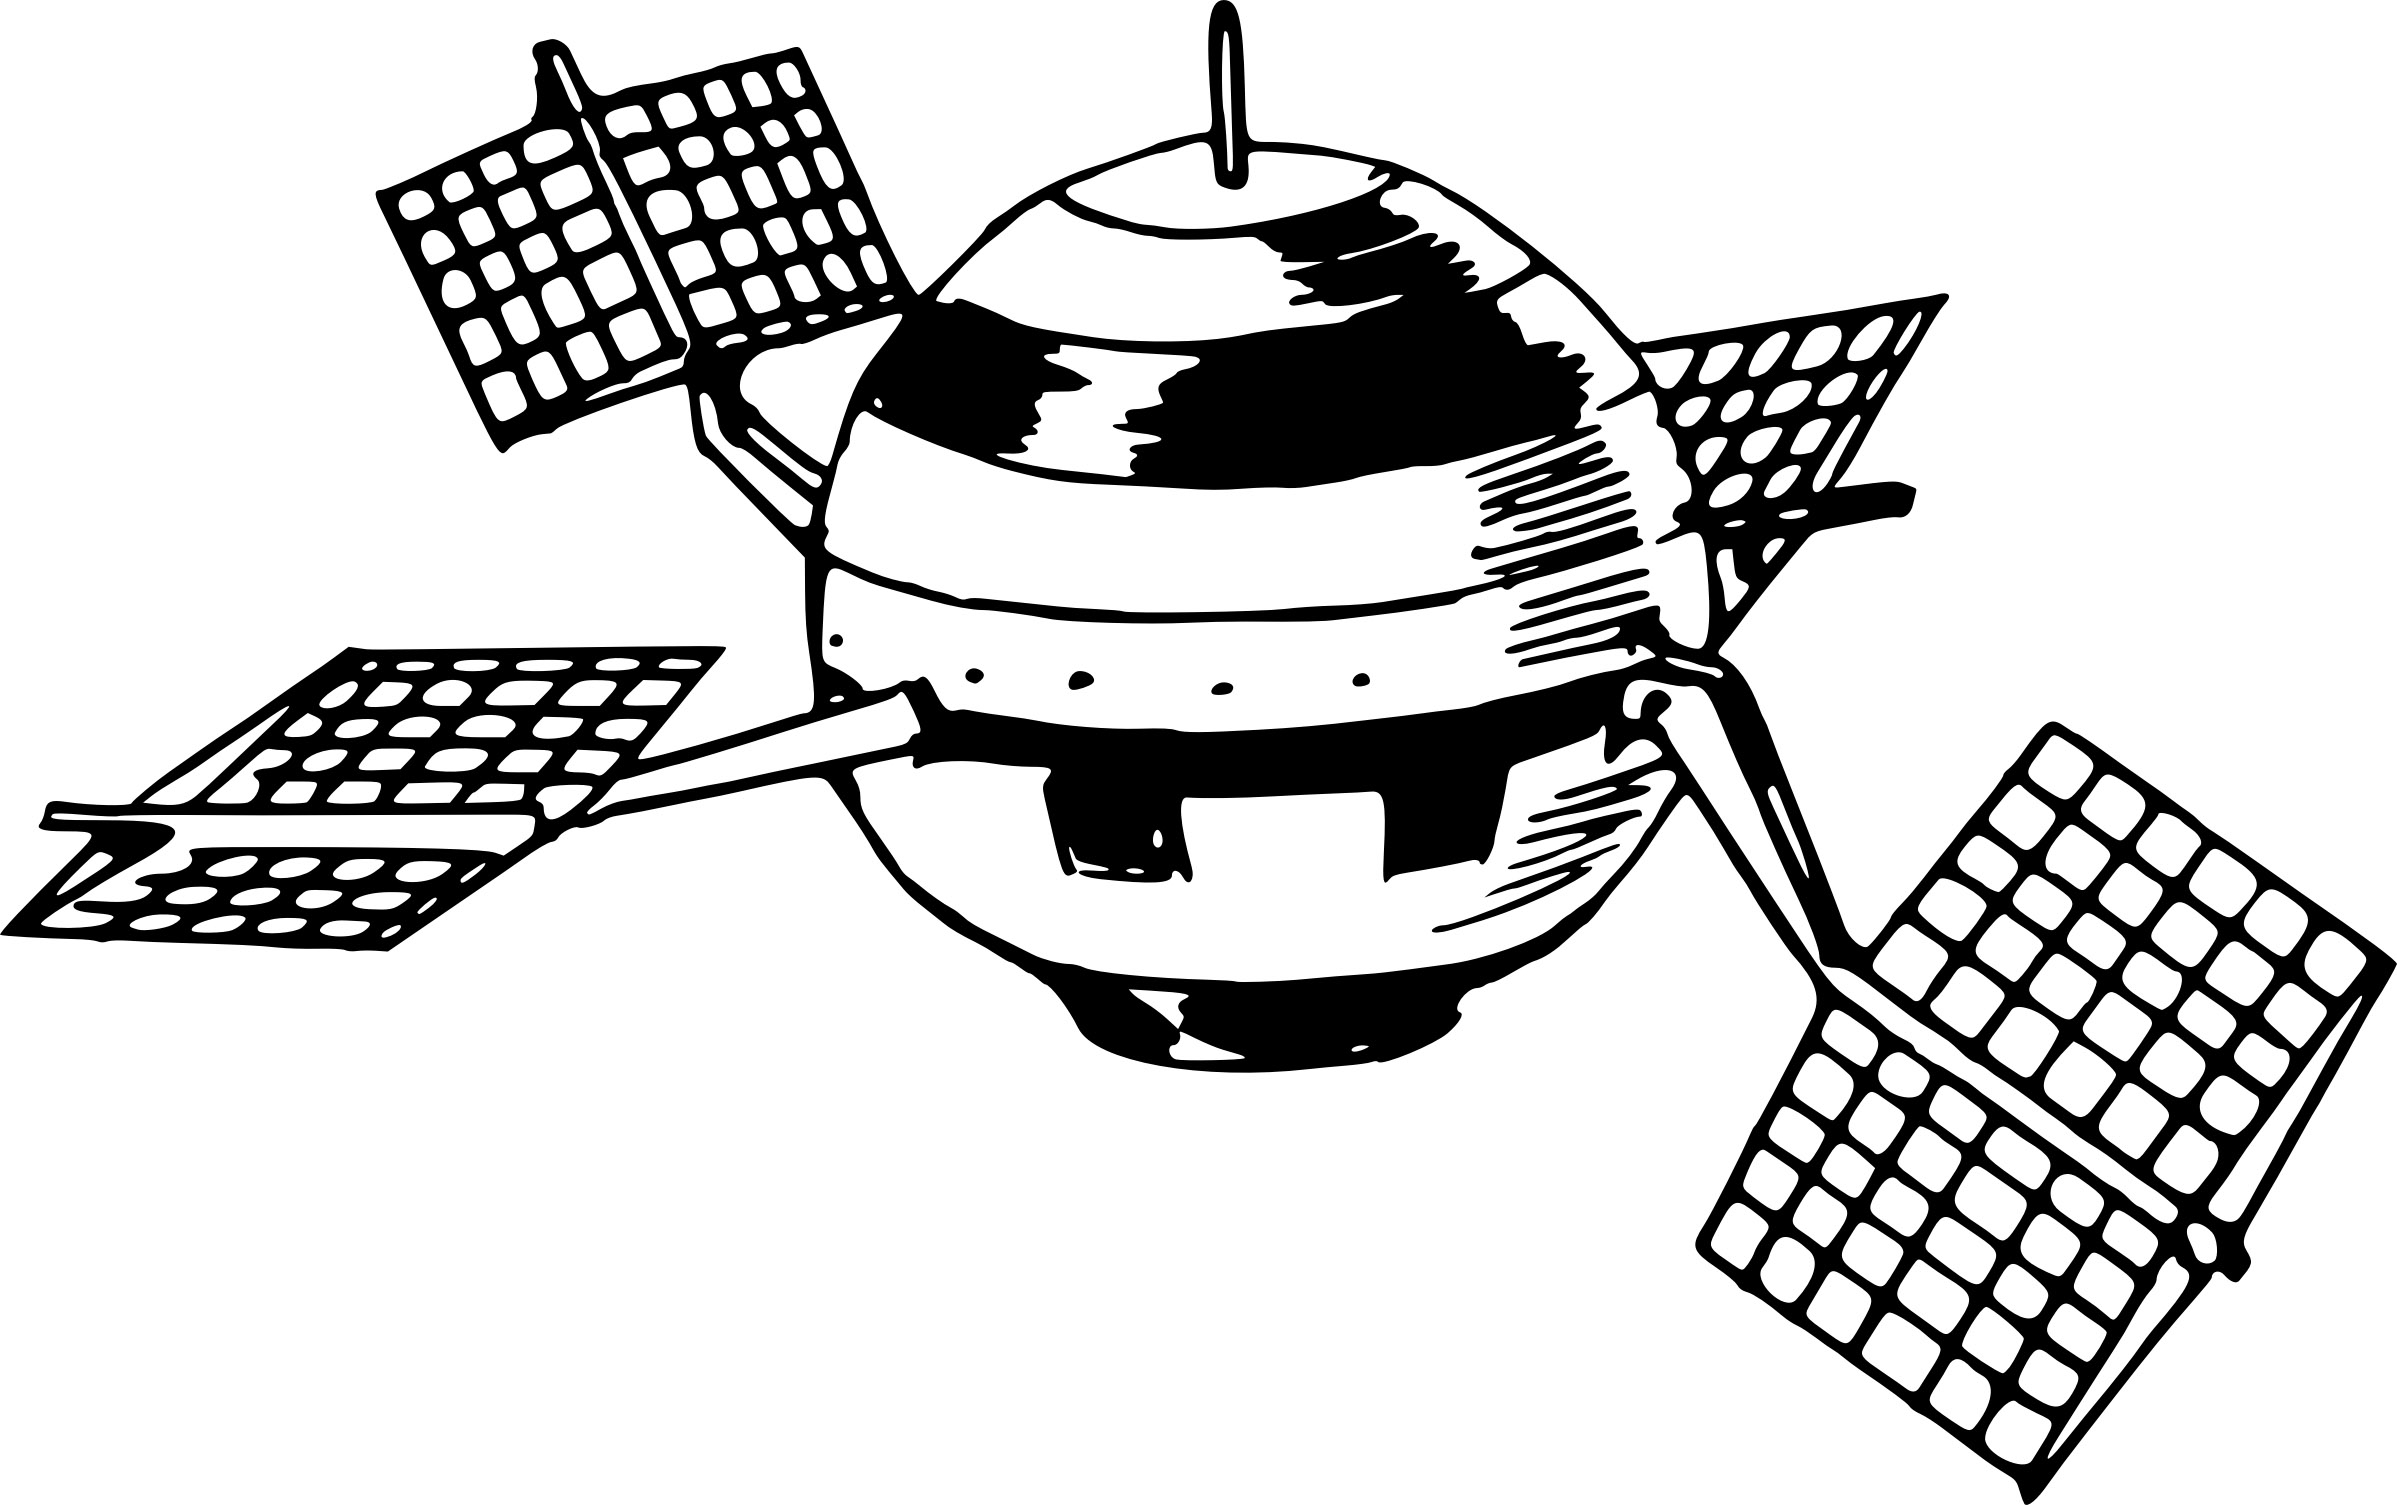 Спутник рисунок для детей. Космический Спутник вектор. Изображения космических аппаратов. Спутник рисунок. Спутник для детей.